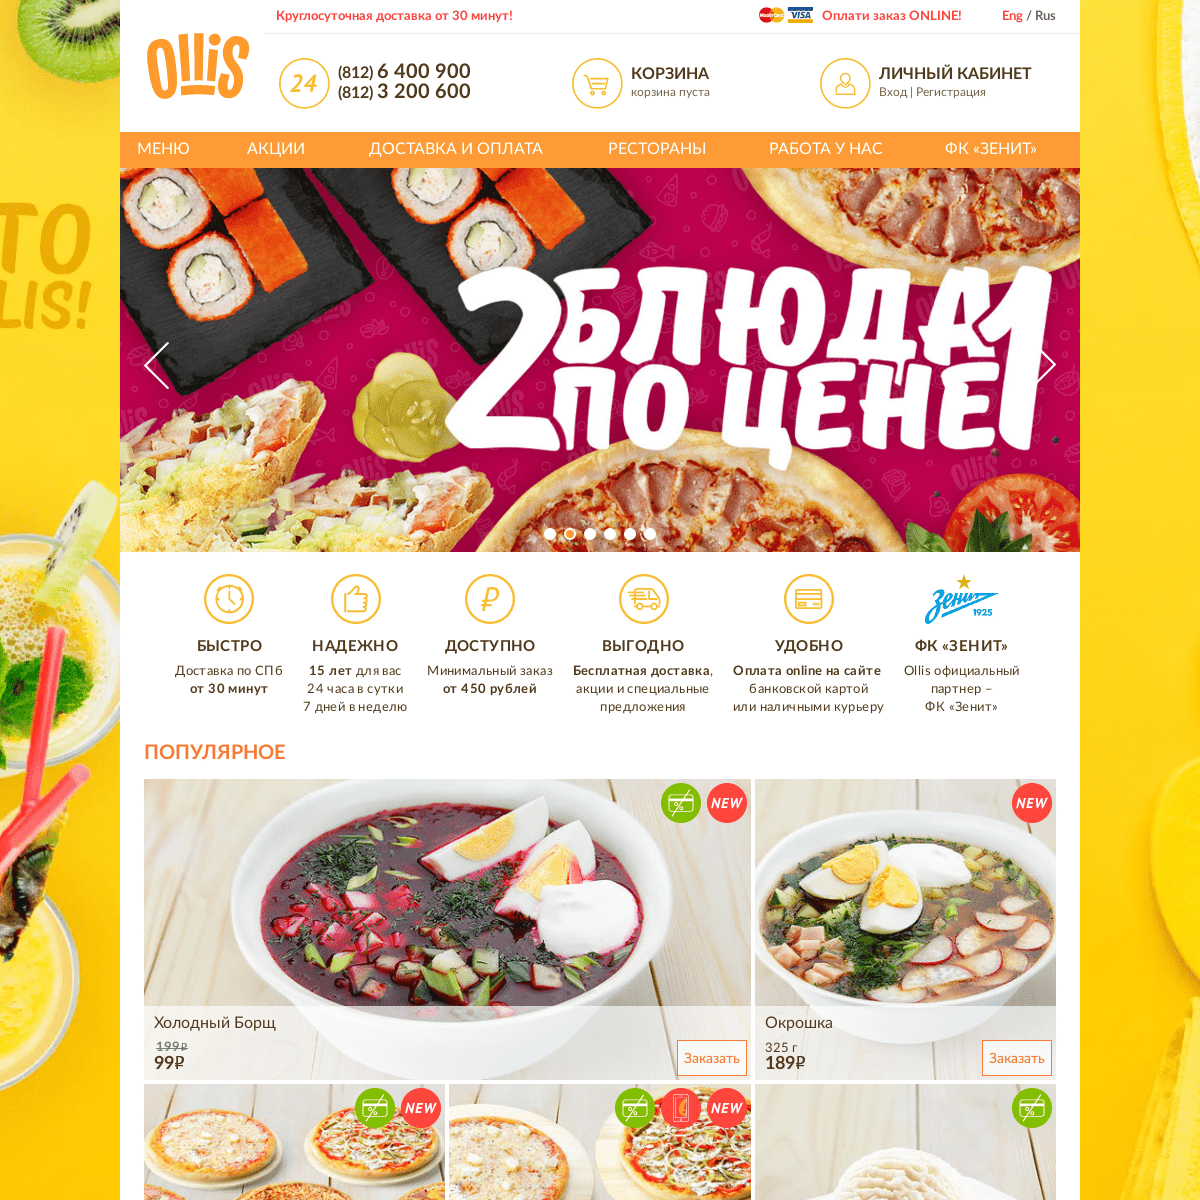 Ollis Club (Оллис Клаб) — бесплатная круглосуточная доставка пиццы на дом в Санкт-Петербурге (СПб)